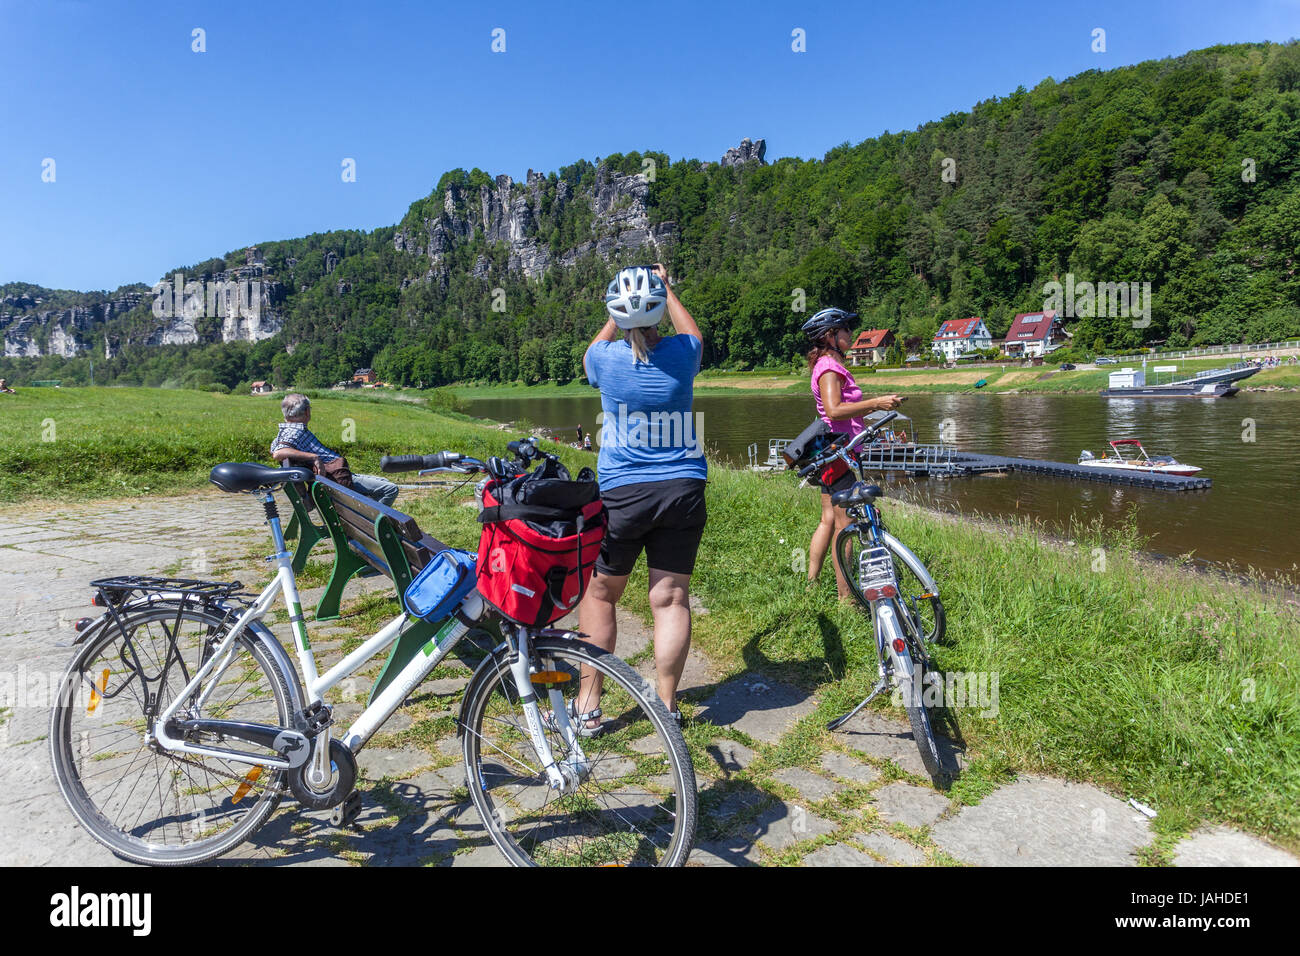 L'Allemagne à vélo, les cyclistes et les roches, Kurort Rathen Vallée de l'Elbe, la Suisse Saxonne Parc National de Saxe, Allemagne, Europe vélo Elbe Banque D'Images